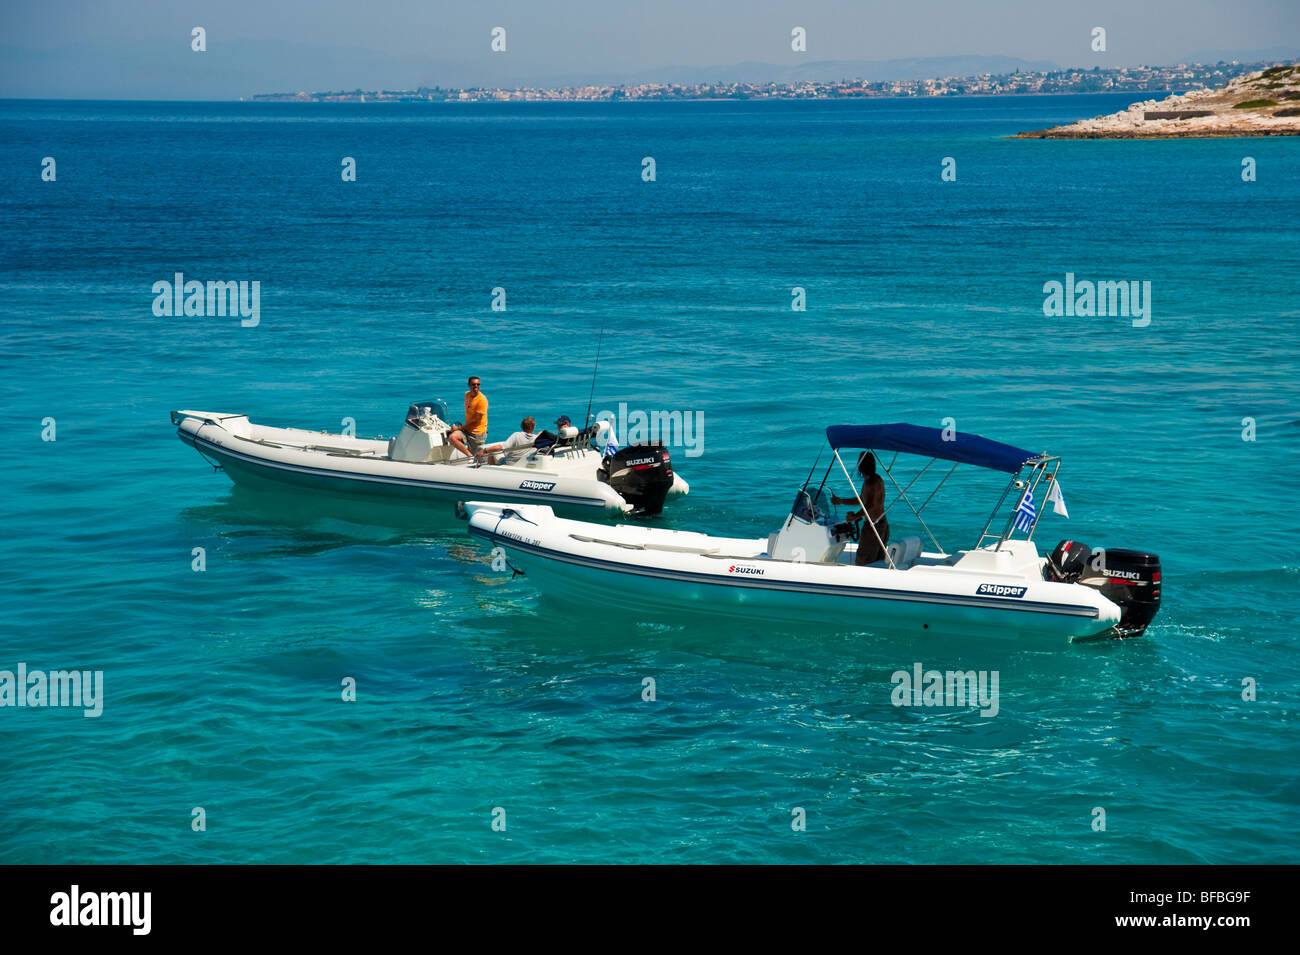 Deux bateaux gonflables blancs dans l'eau bleue, Saroic Golf, Grèce Banque D'Images